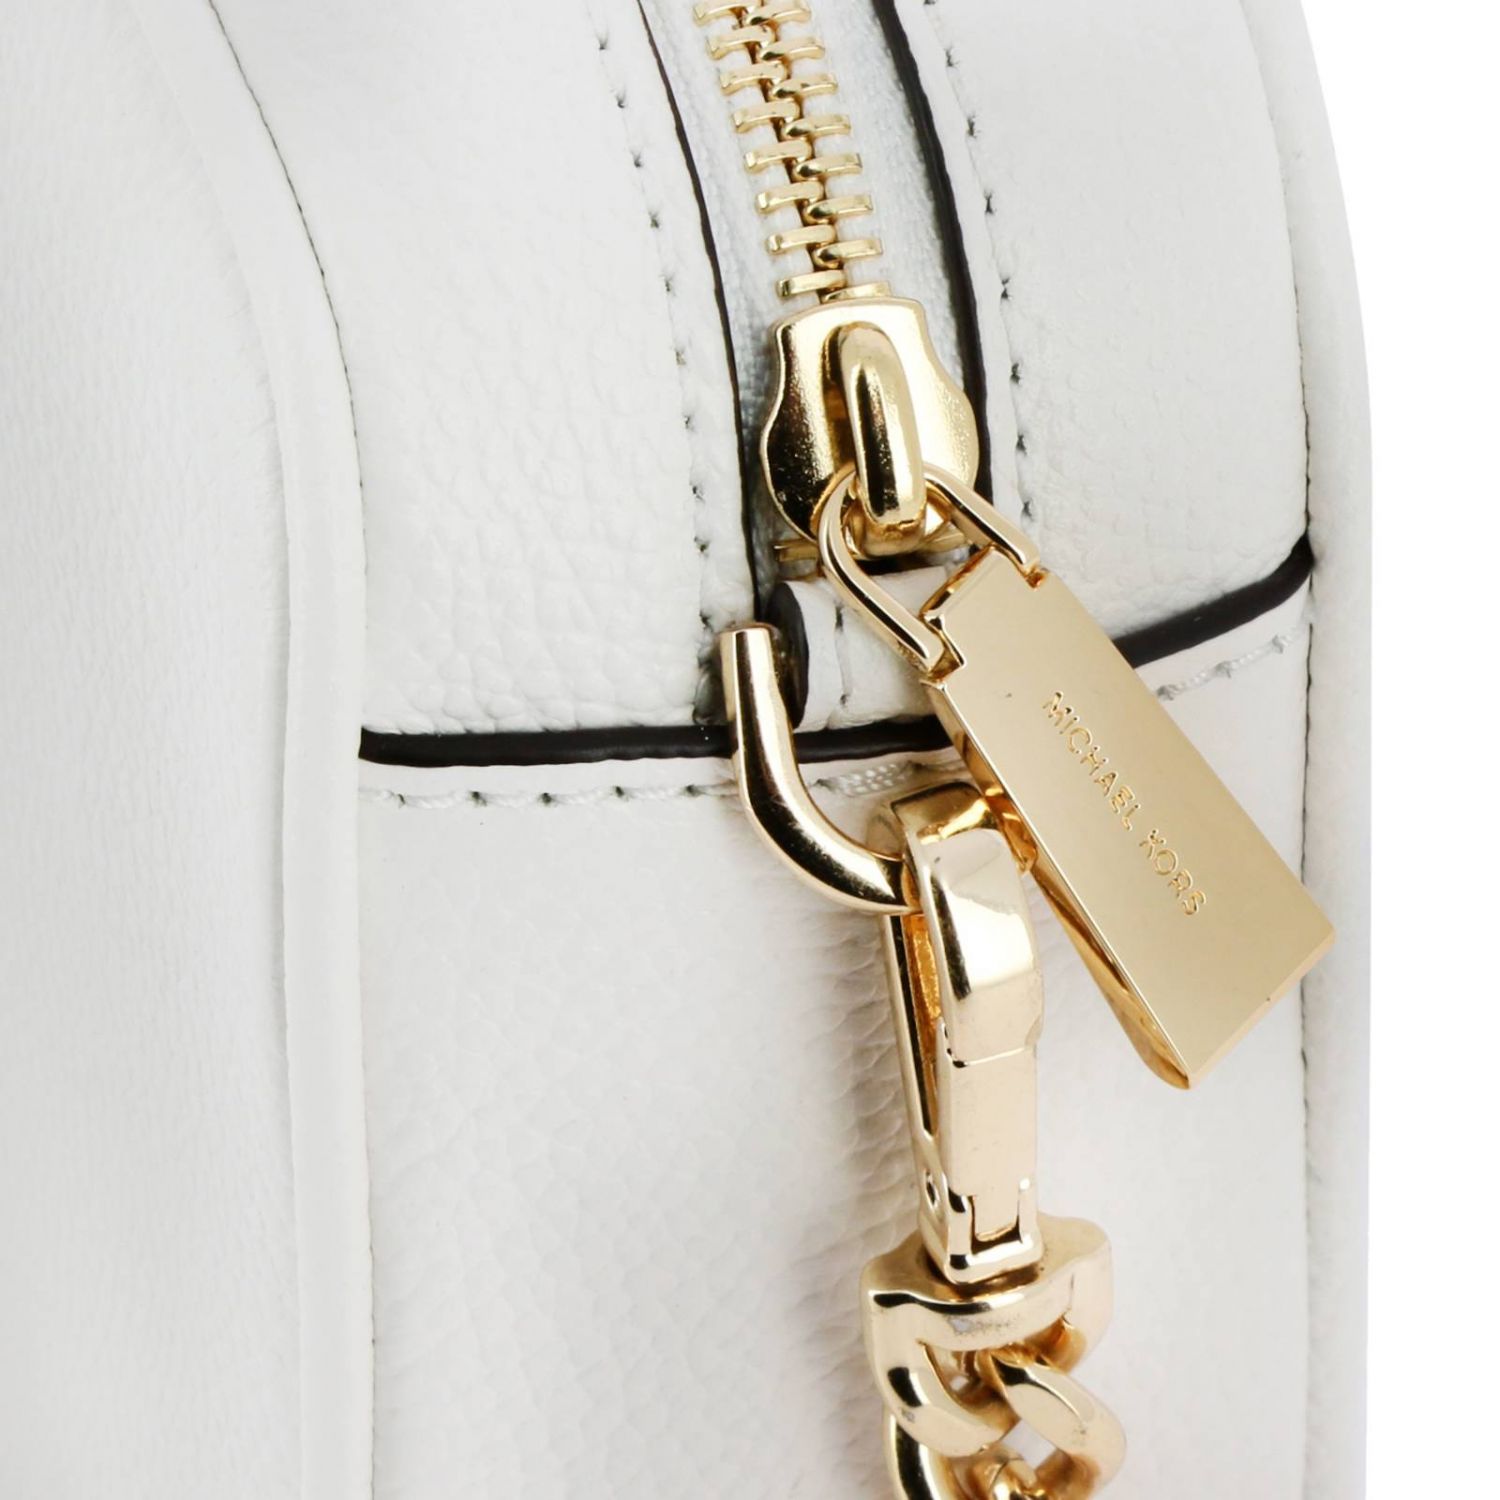 Michael Kors Outlet: mini bag for woman - White | Michael Kors mini bag ...